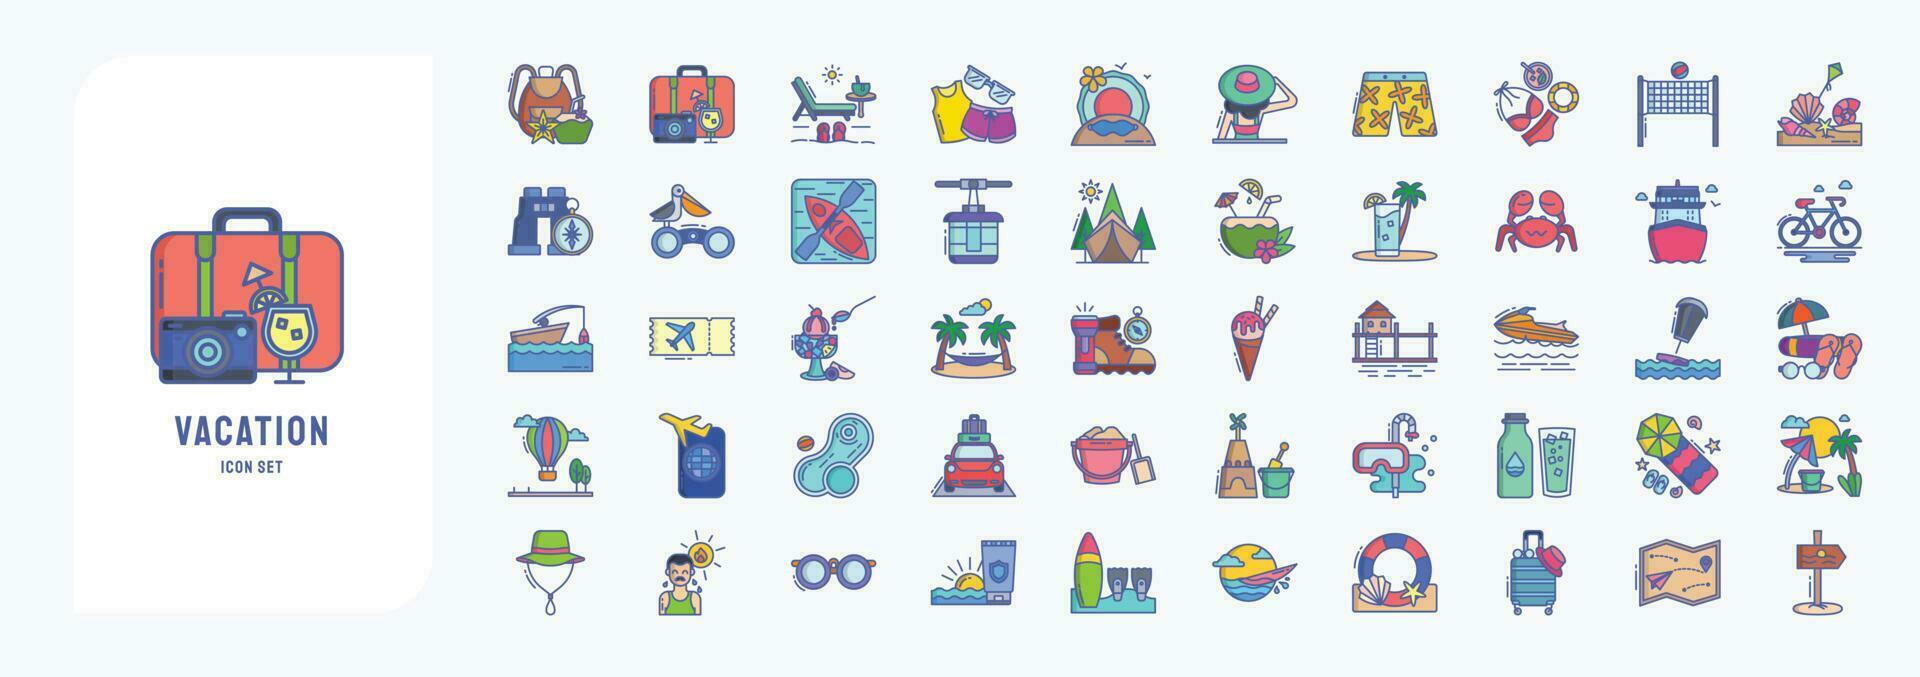 verzameling van pictogrammen verwant naar vakantie en reis, inclusief pictogrammen Leuk vinden rugzak, reis, vakantie, vakantie en meer vector